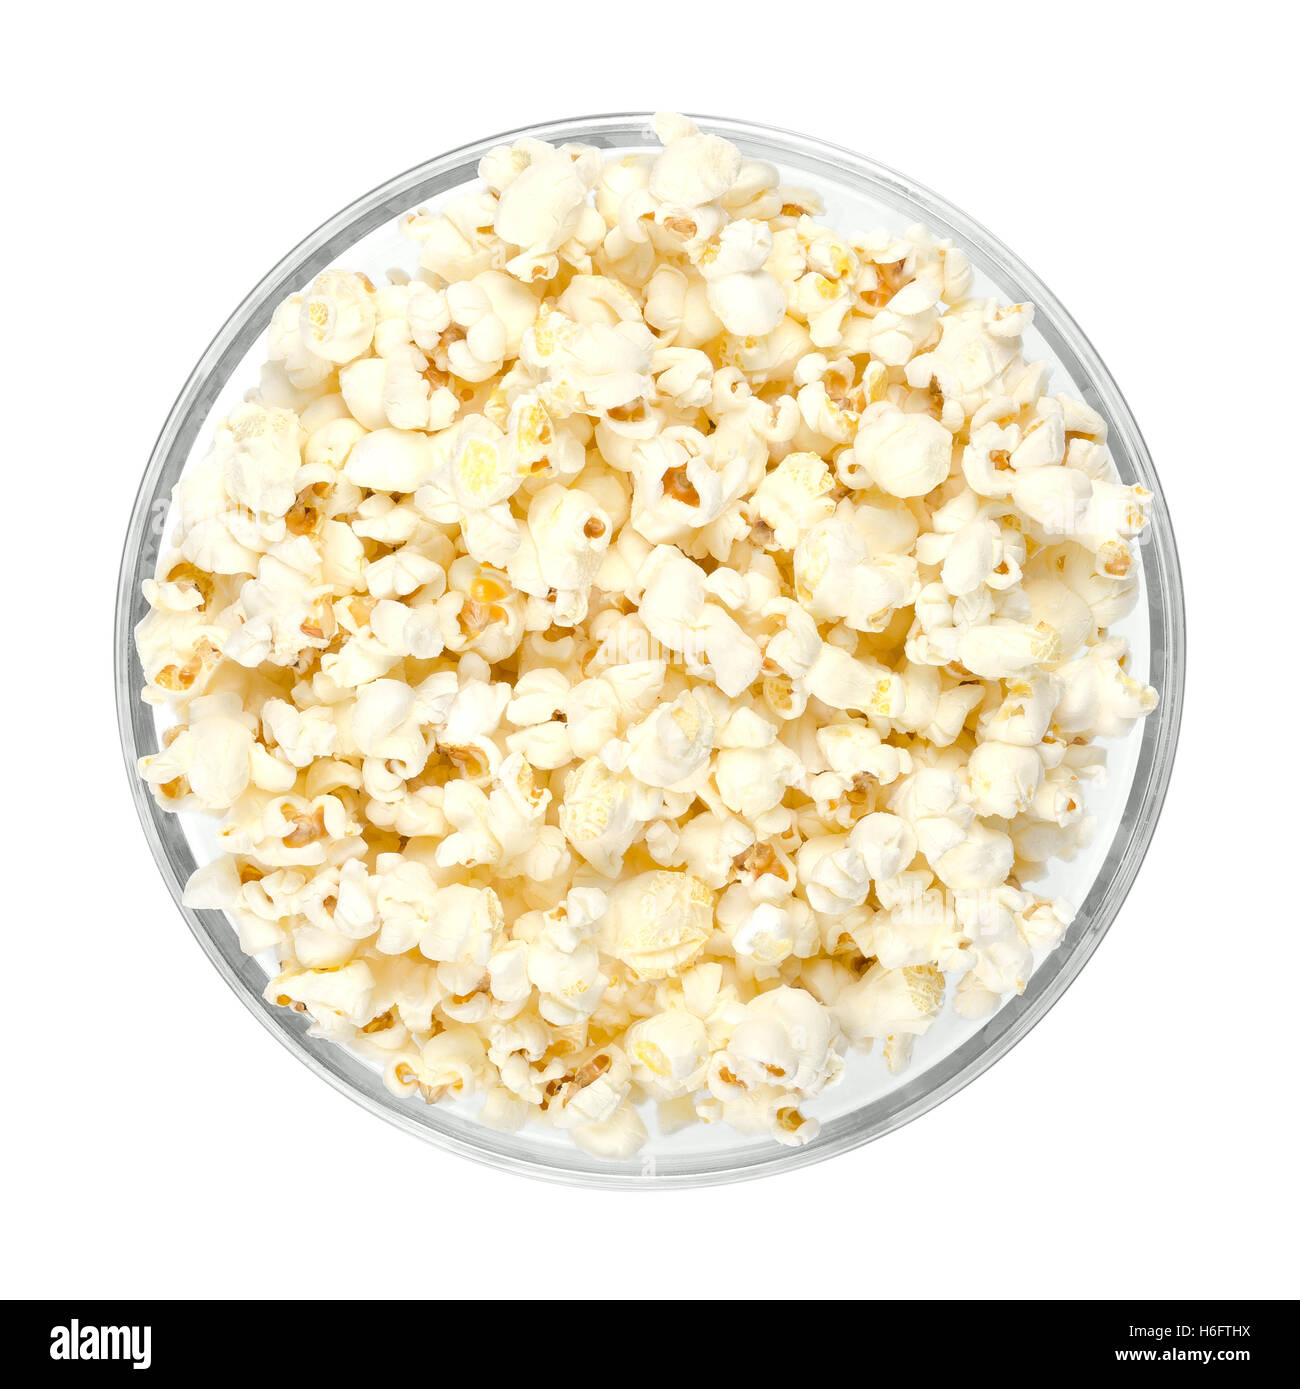 Popcorn schioccato in recipiente di vetro su sfondo bianco. A forma di farfalla di popcorn gonfiati dal kernel, dopo che è stato riscaldato. Foto Stock